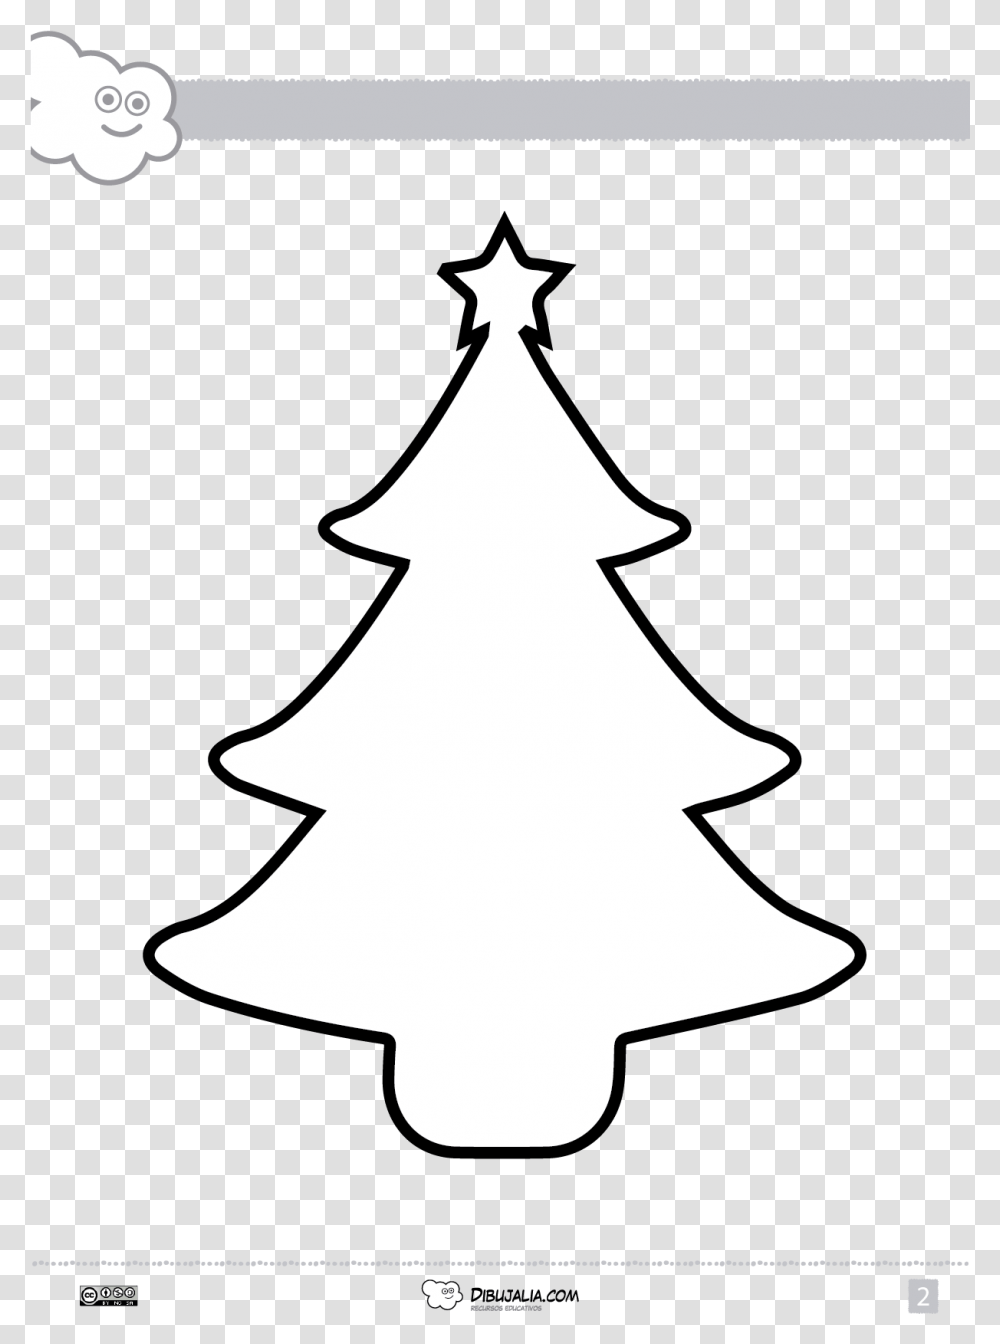 Siluetas De Arboles De Navidad, Star Symbol, Tree, Plant, Person Transparent Png